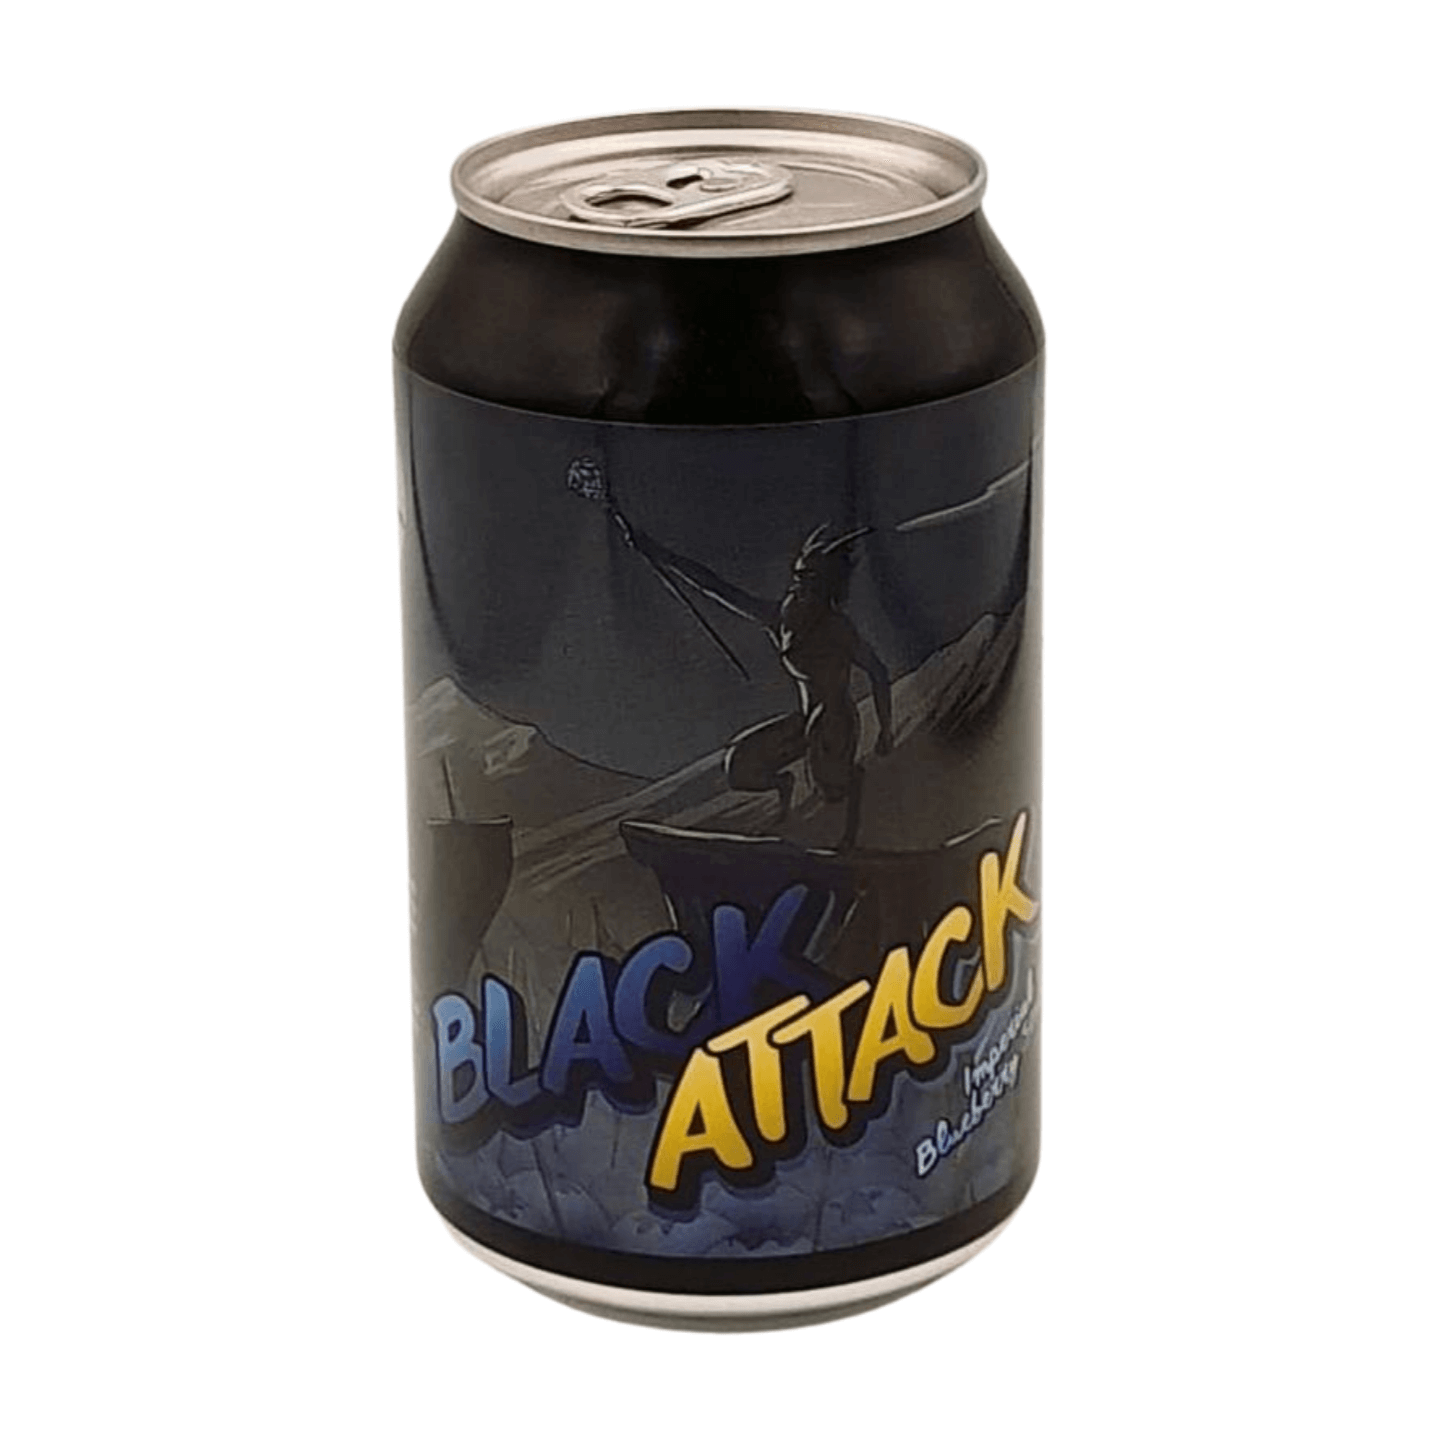 Didko Brewery Black Attack! | Imperial Blueberry Stout Webshop Online Verdins Bierwinkel Rotterdam